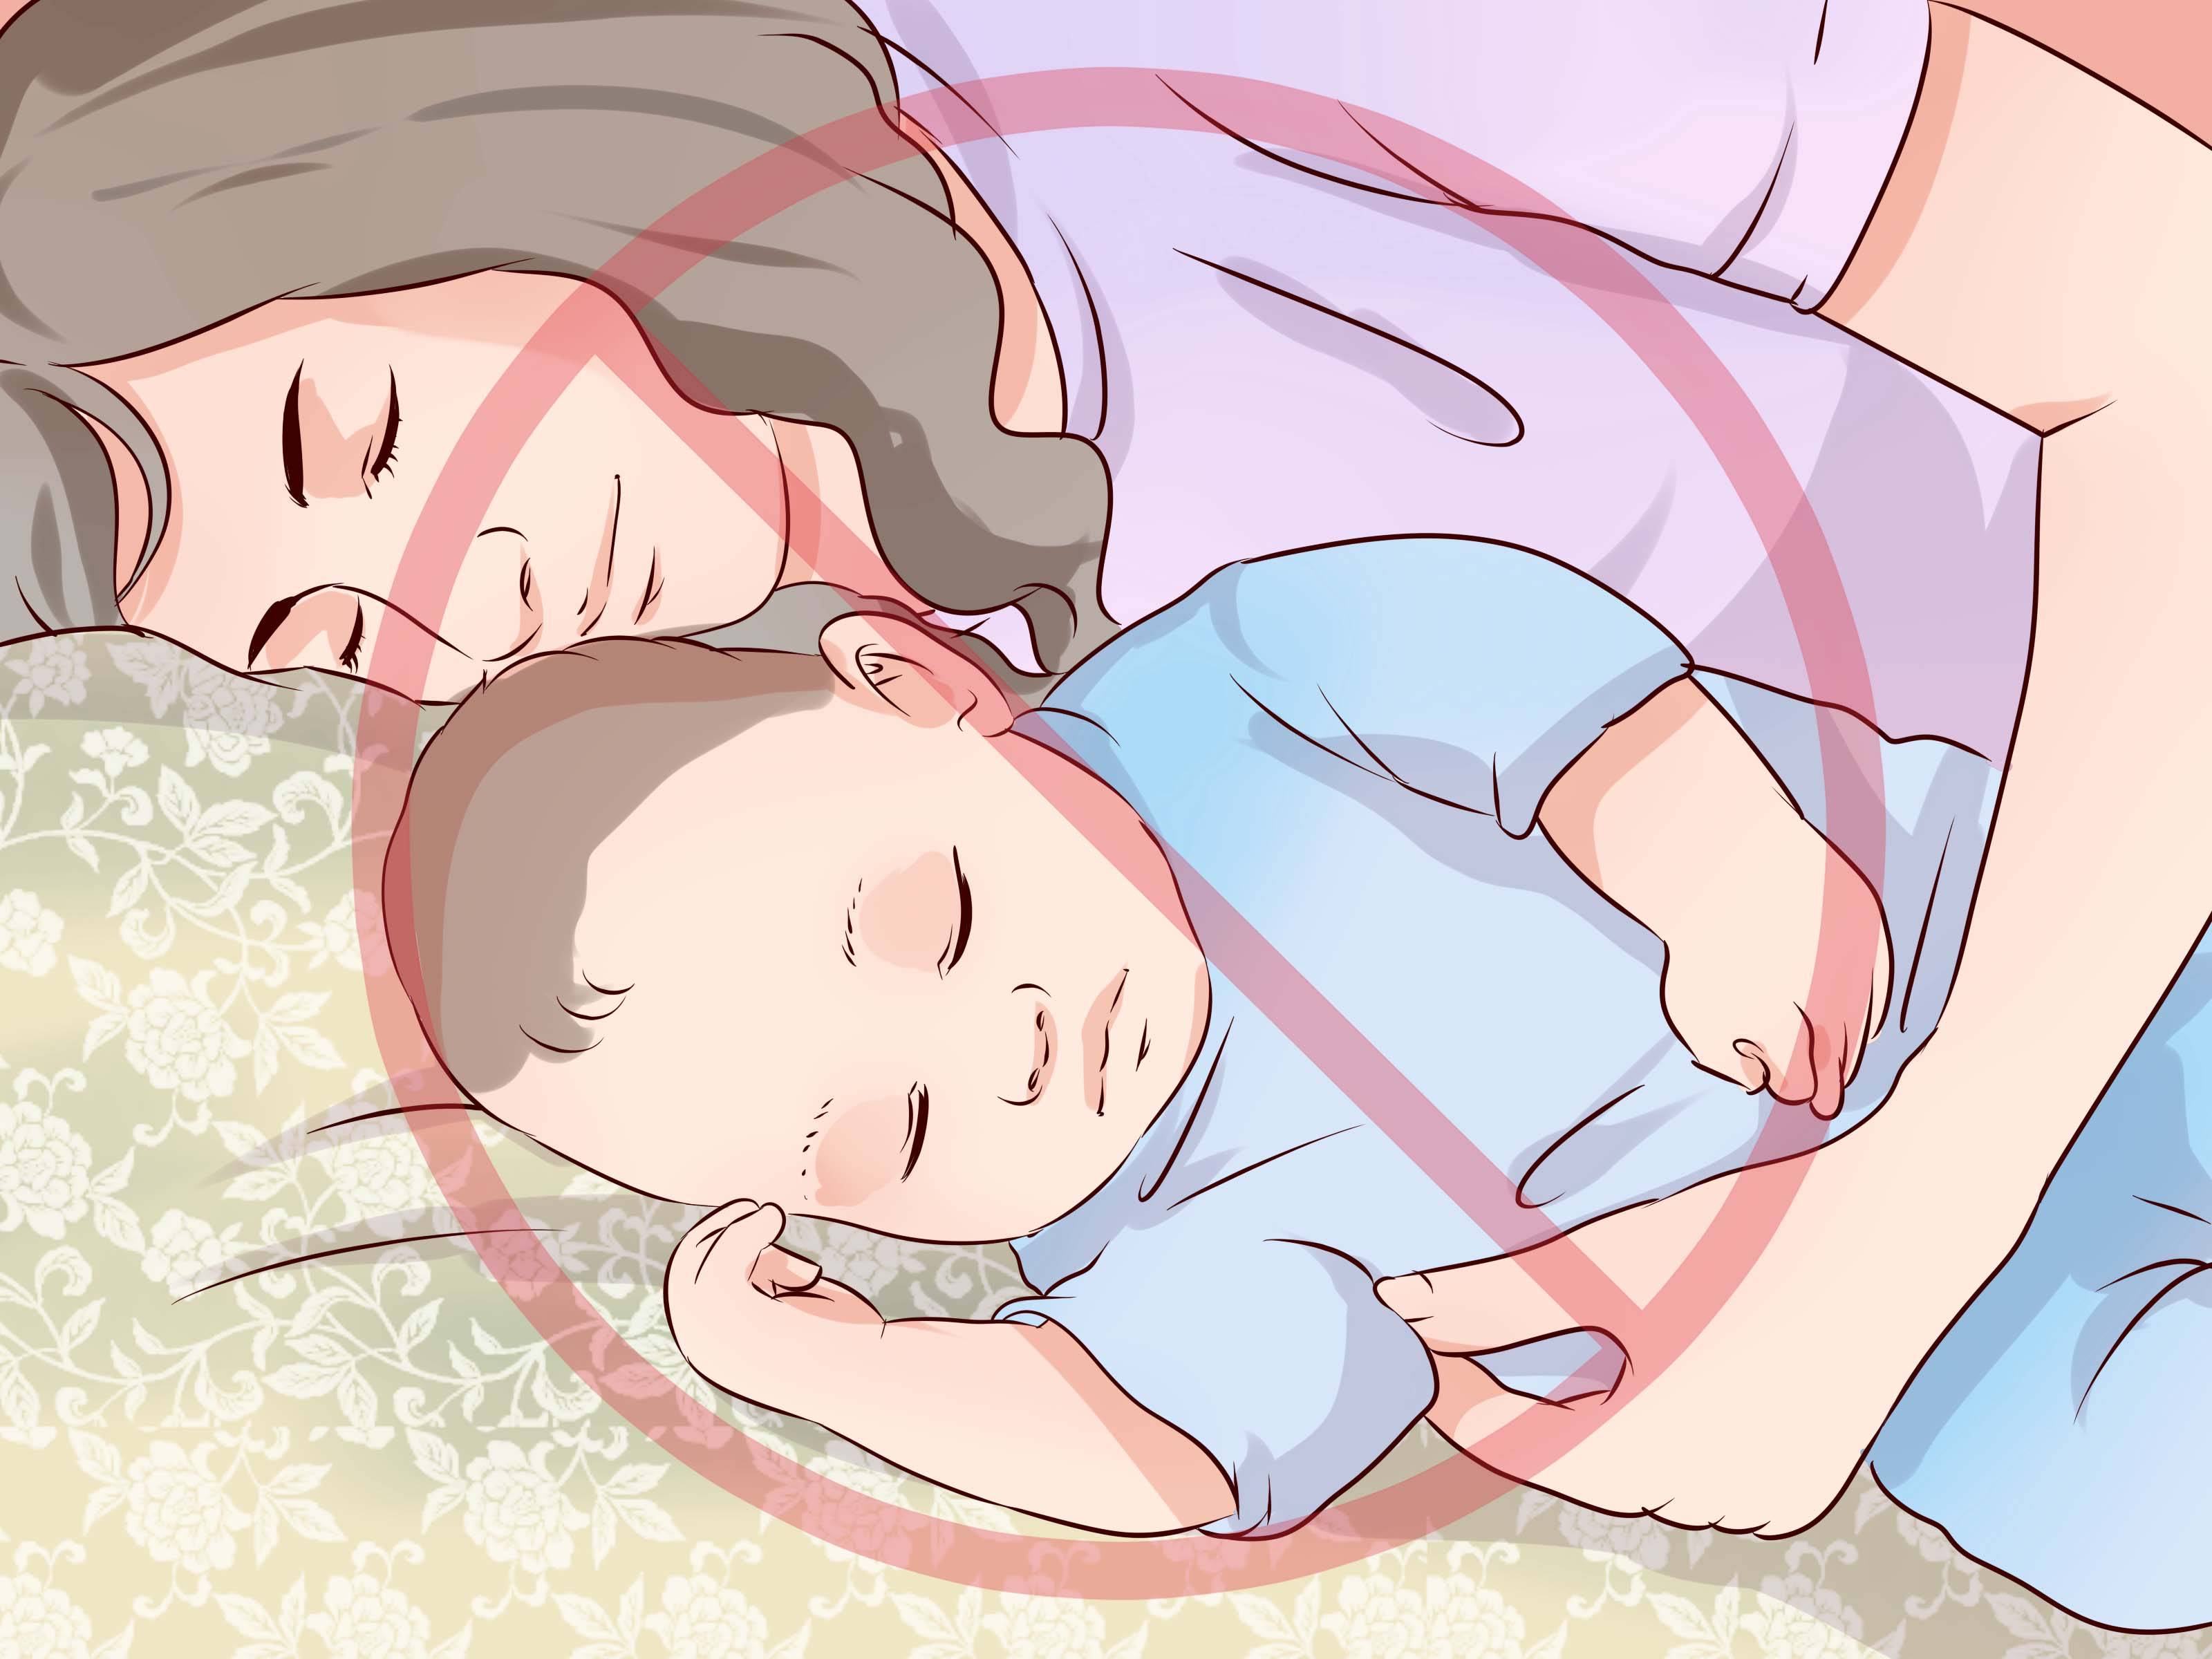 Как уложить новорожденного спать: в кроватку, в какой позе правильно укладывать, можно ли на живот, а также днем, ночью, после кормления и без укачивания